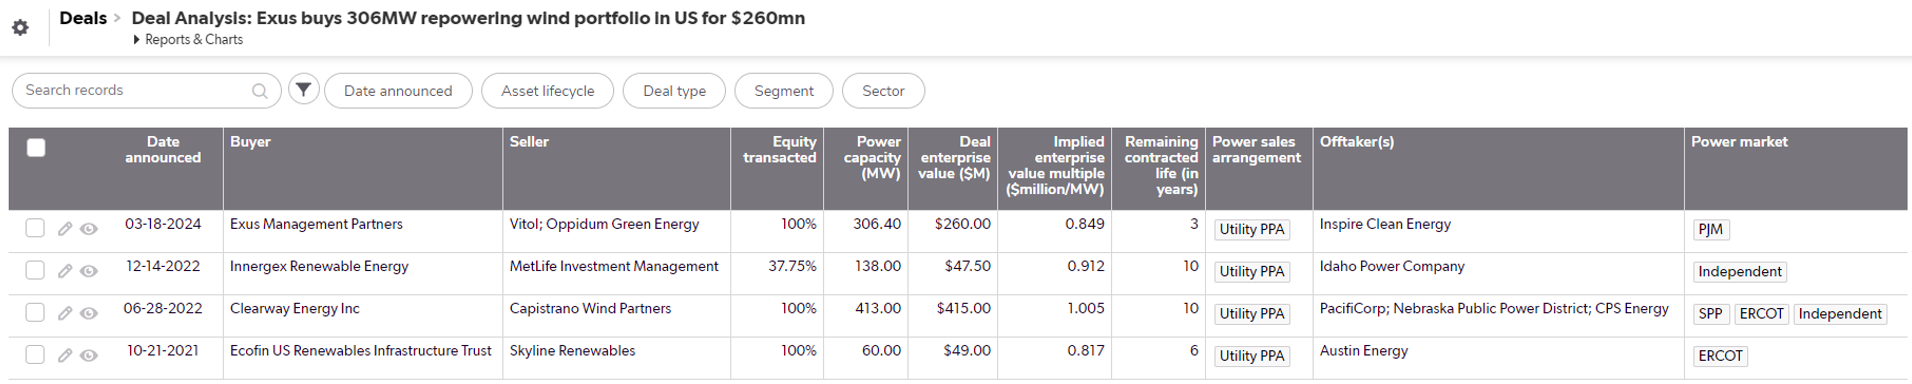 Exus Acquires 306MW Wind Portfolio for Repowering